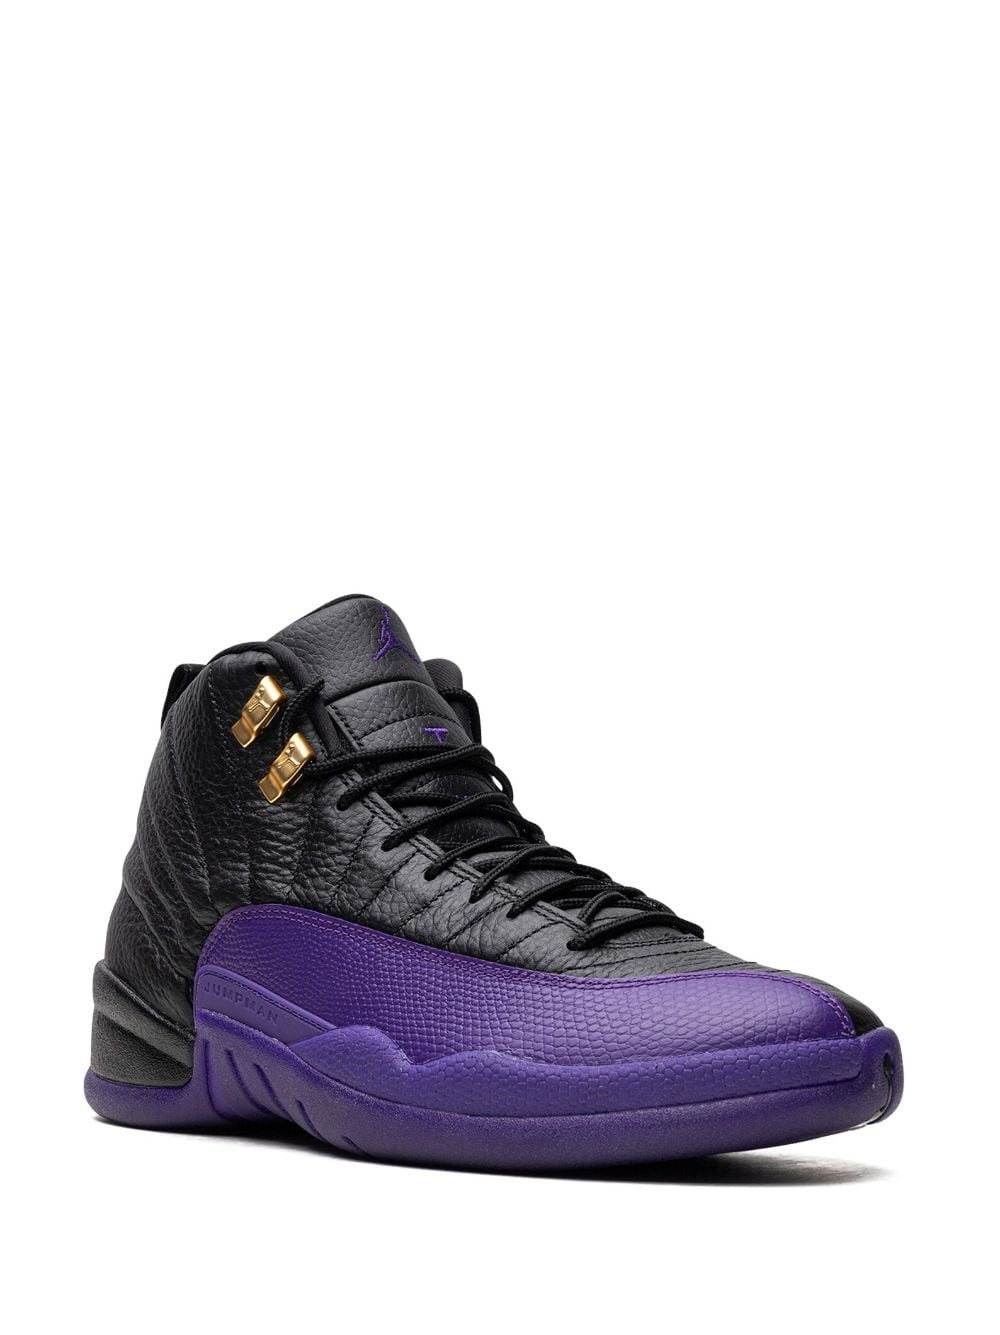 Air Jordan 12 "Field Purple" sneakers - 2